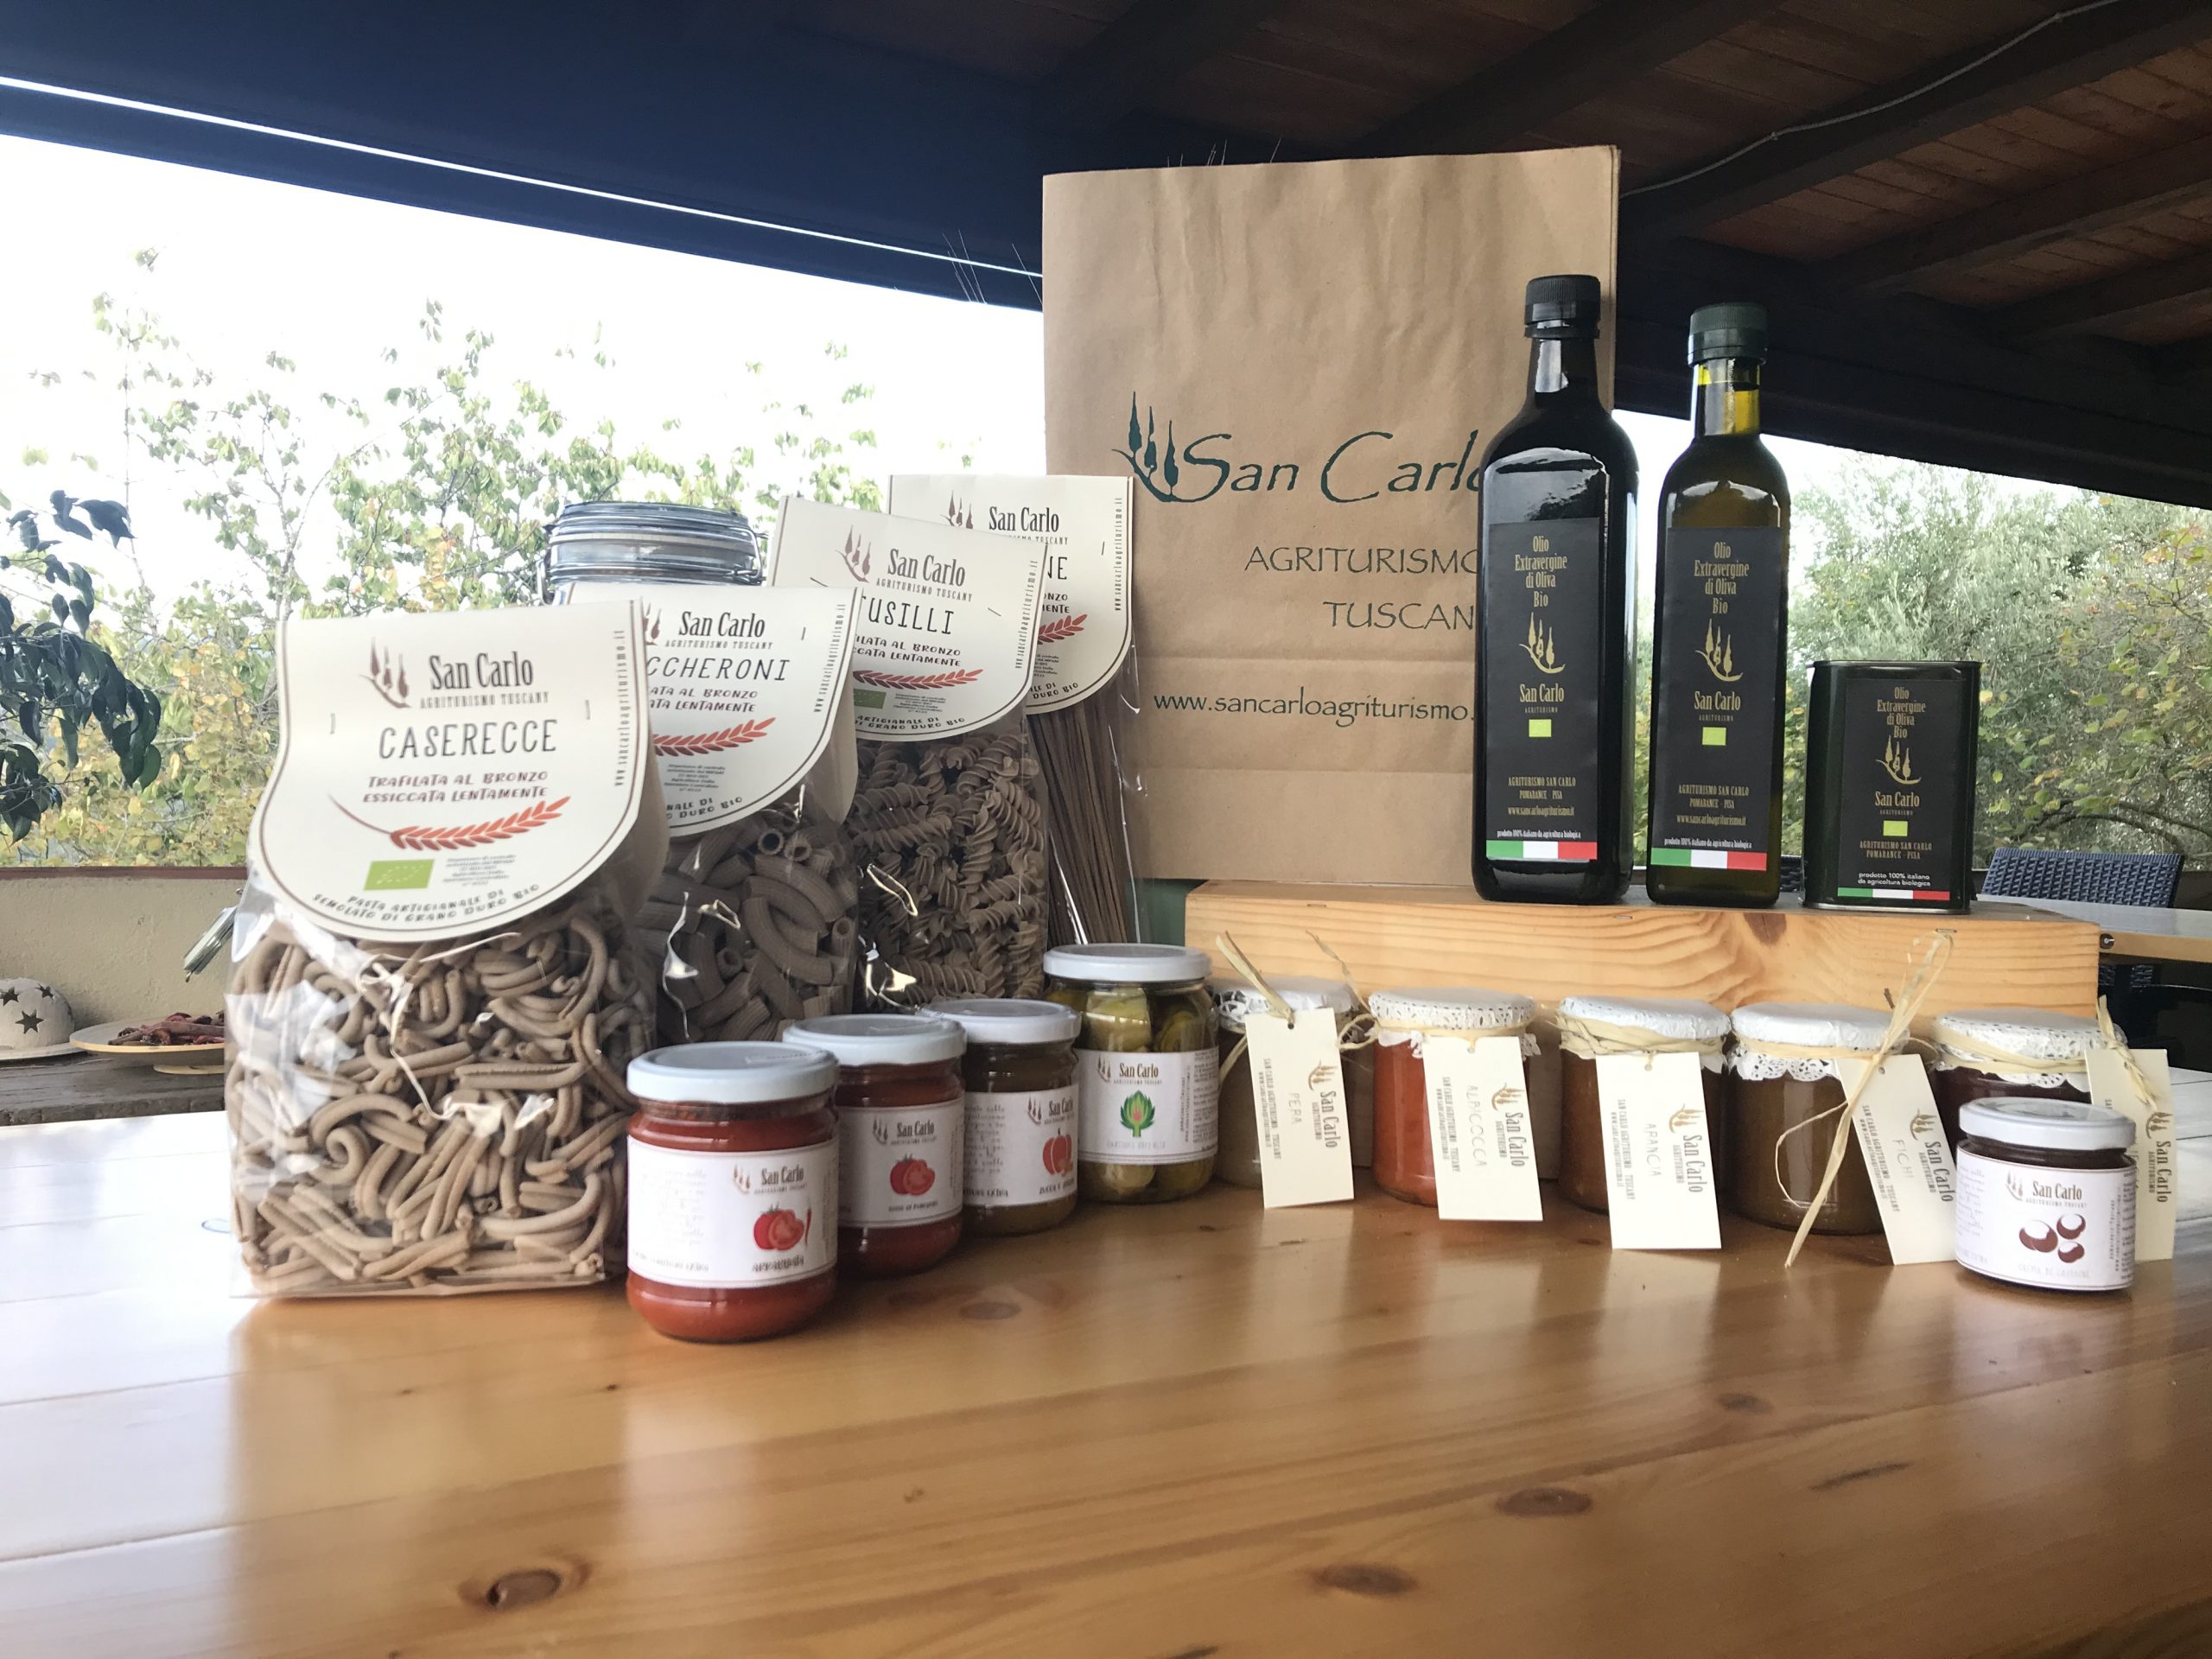   WEEK - Cesto di prodotti biologici derivati dell'azienda agricola / Basket of organic products derived from the farm € 760